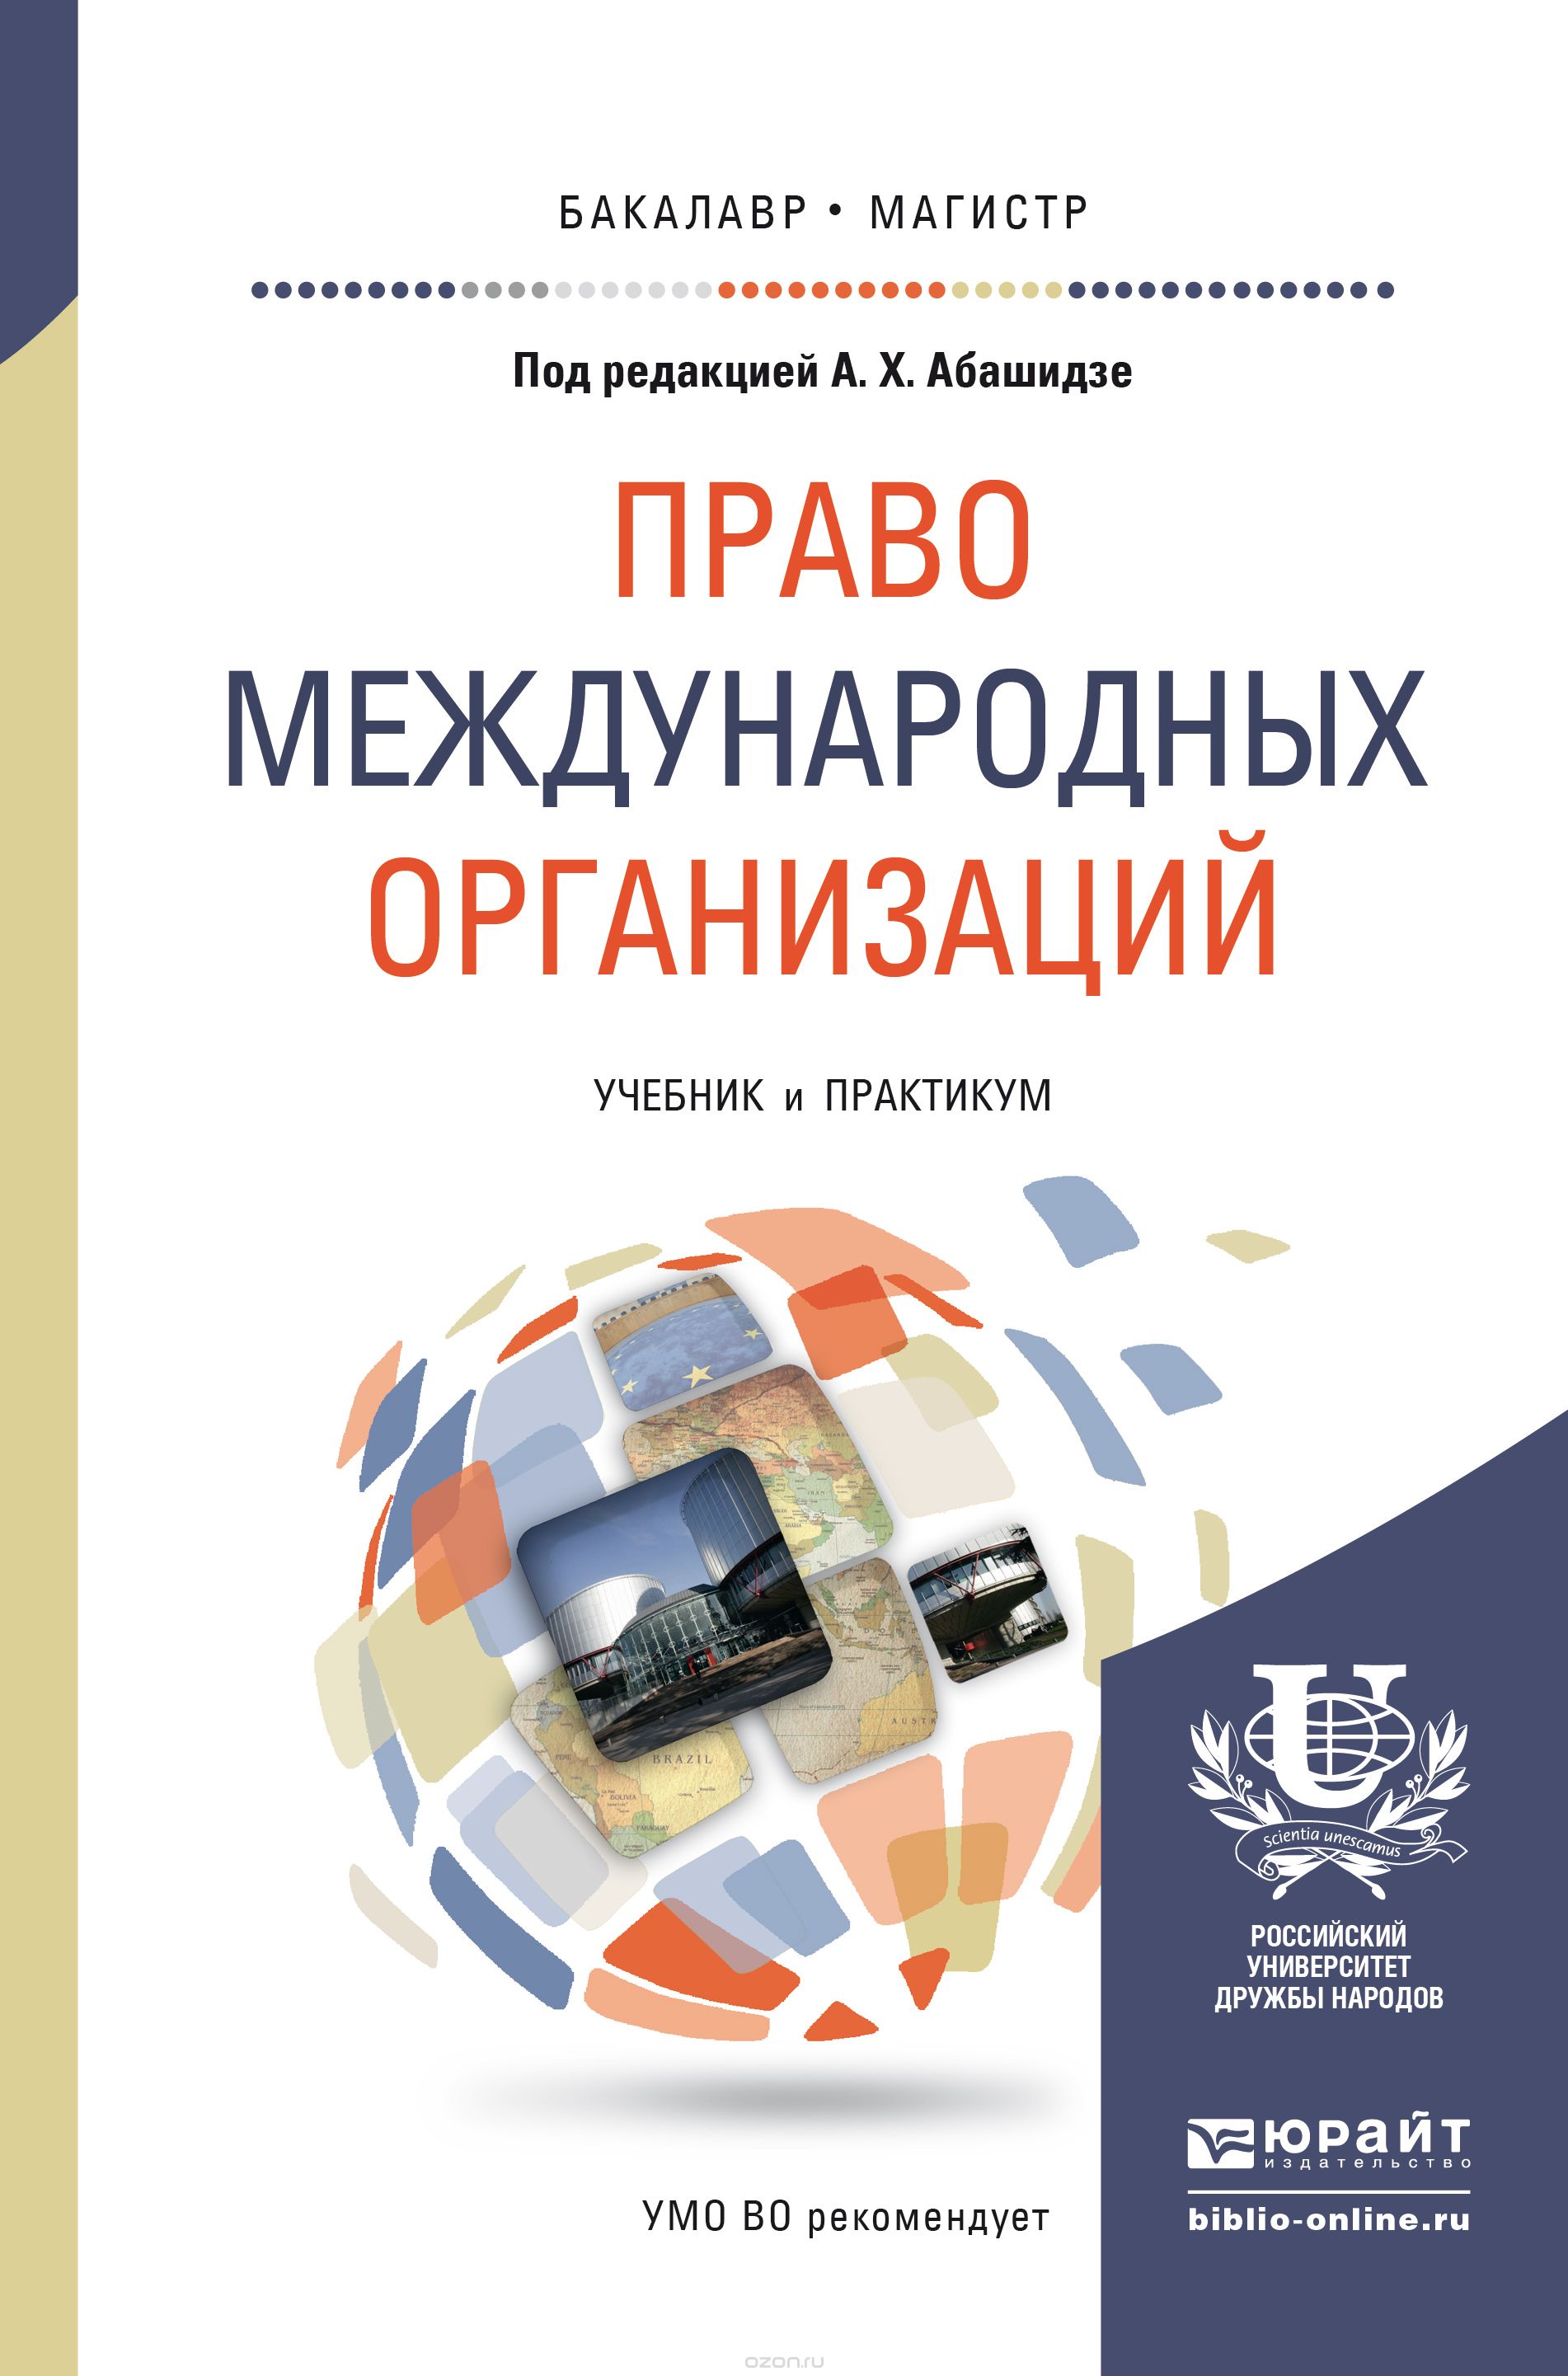 Скачать книгу "Право международных организаций. Учебник и практикум, А. Х. Абашидзе"